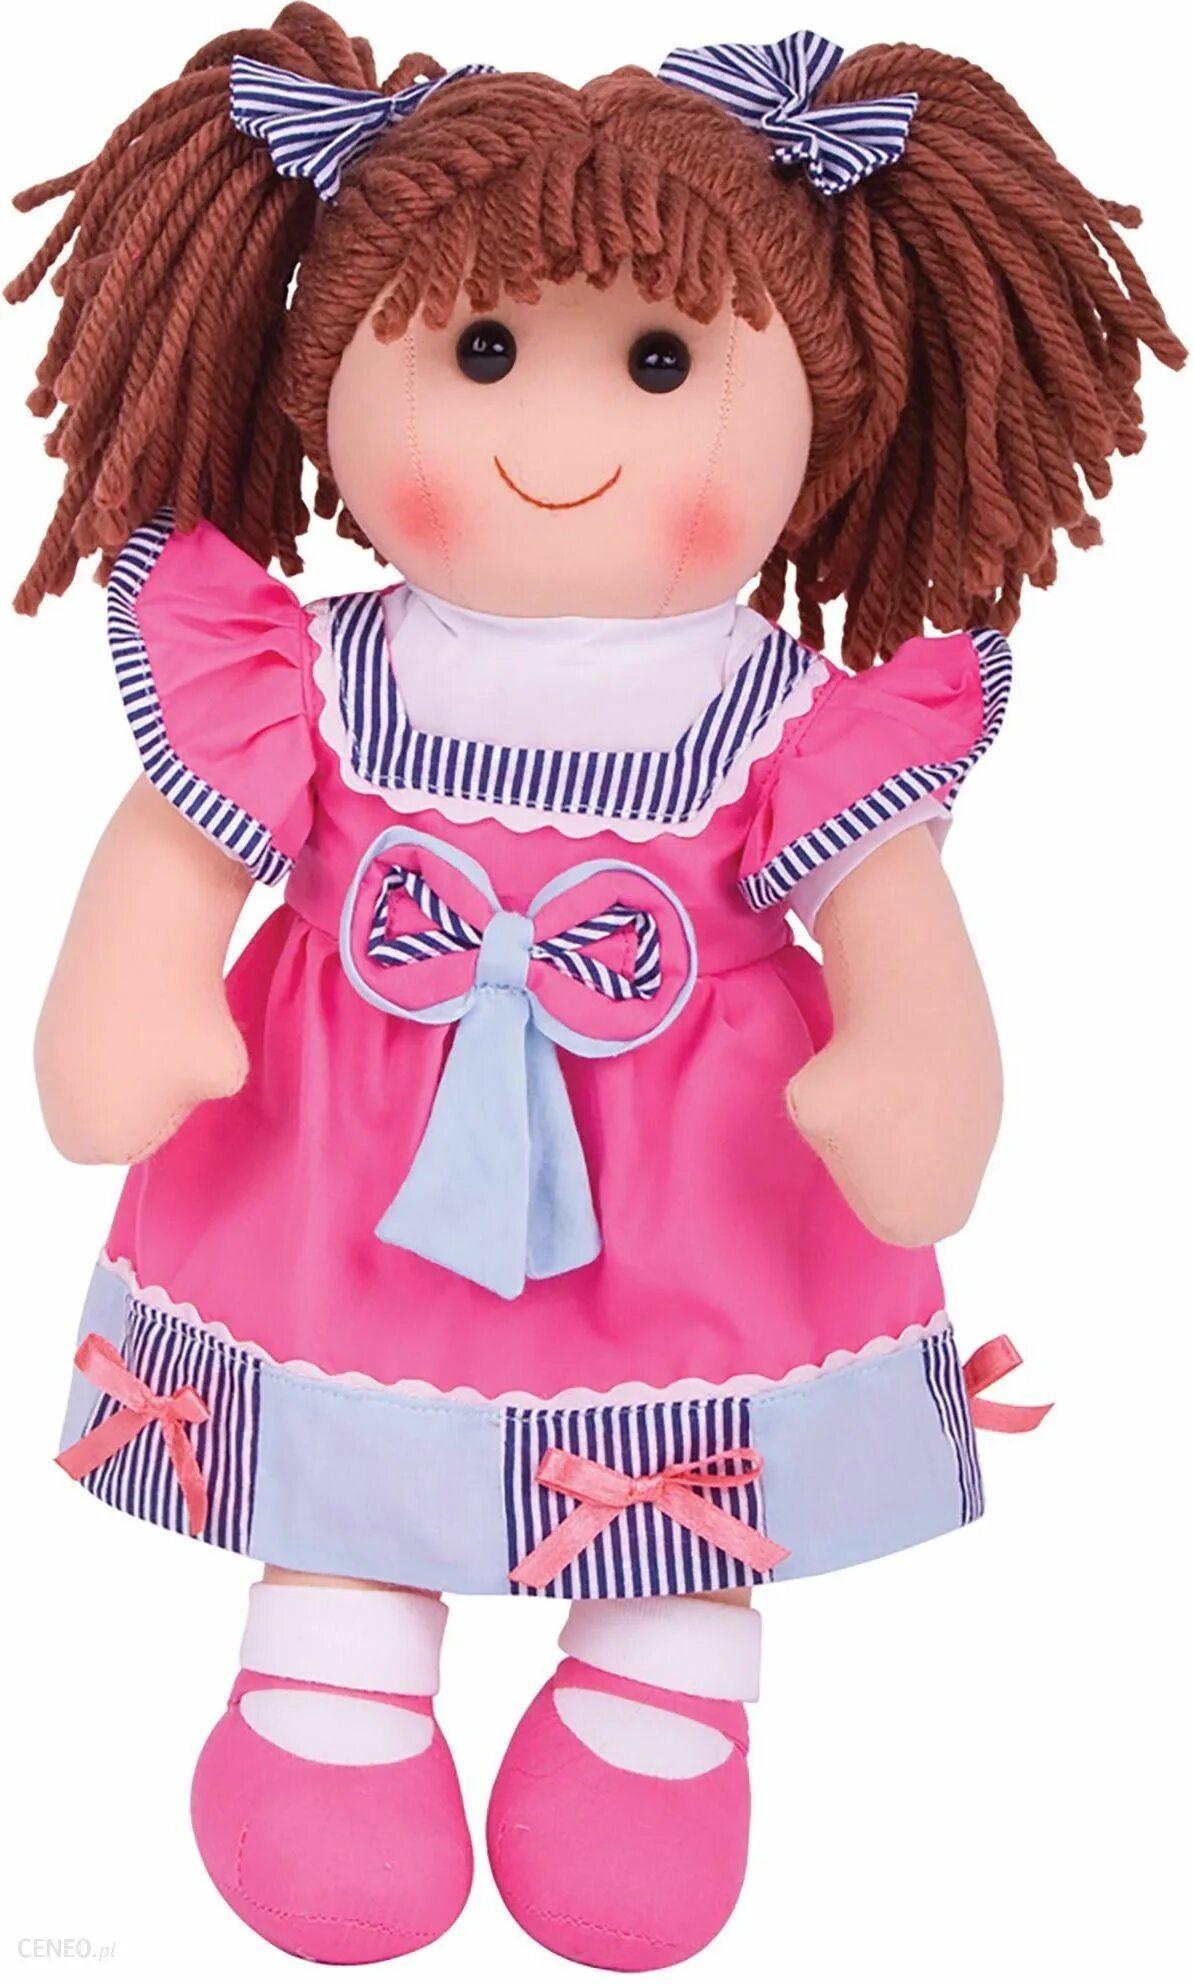 Мягкая кукла. Тряпичная кукла. Мягкая кукла для девочек. Тряпичная кукла игрушка. Кукольные игрушки купить